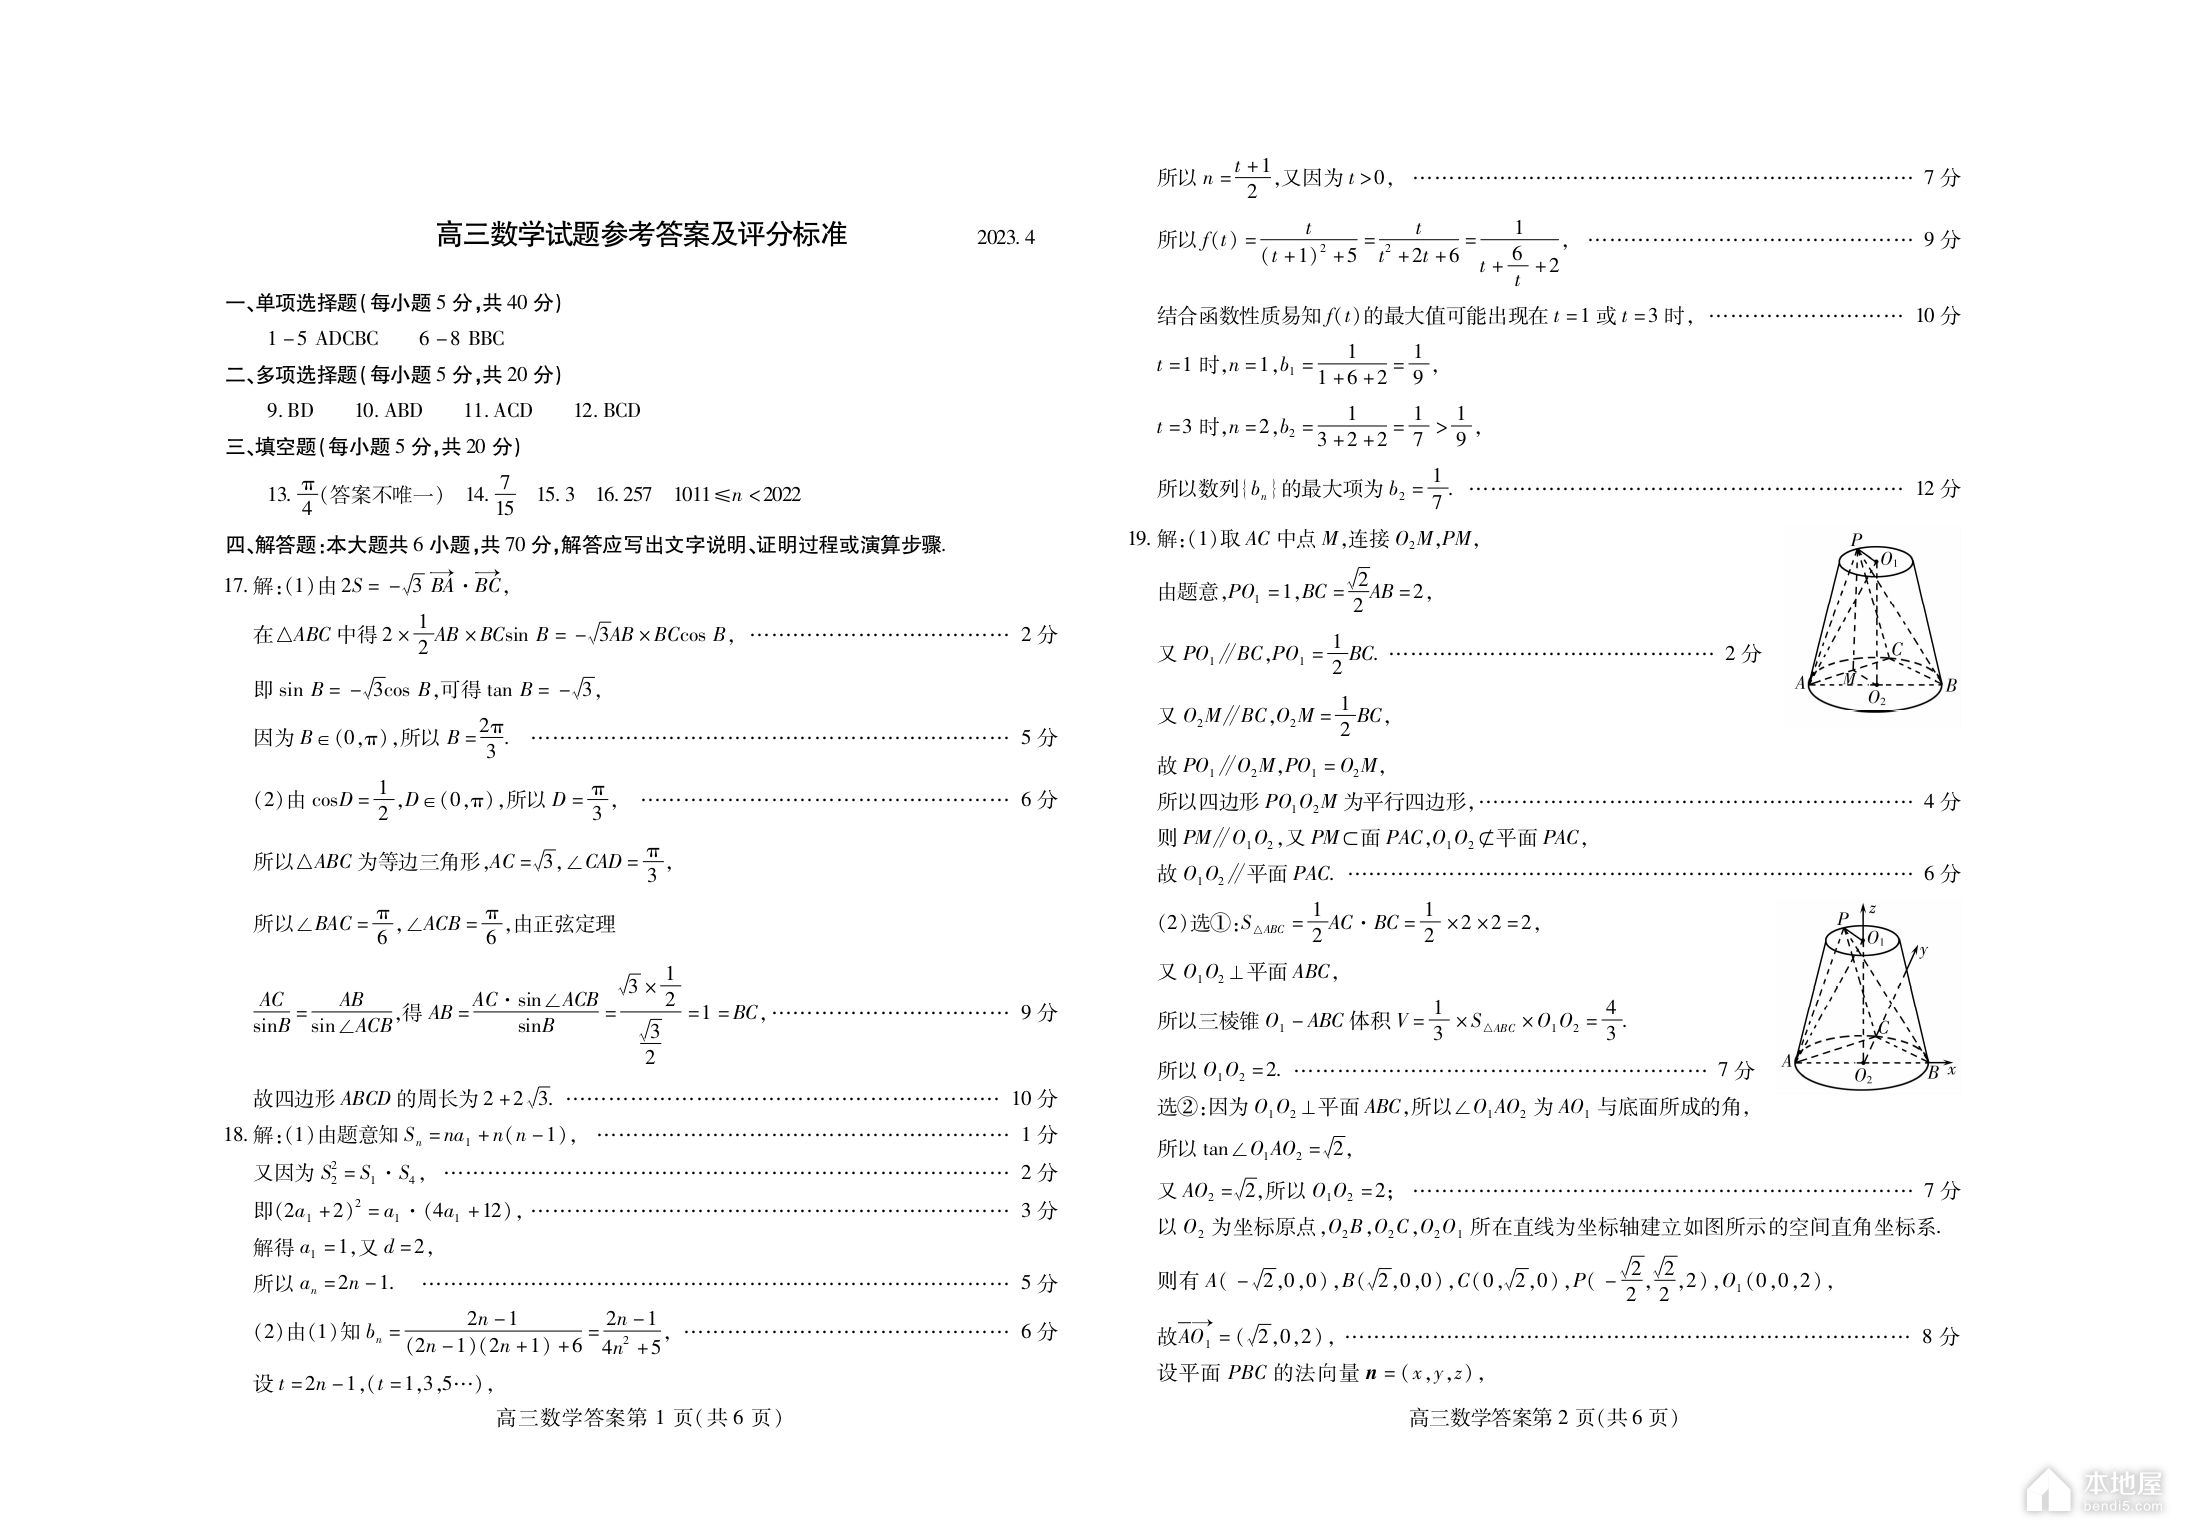 黑龙江高考加分政策（2023年）